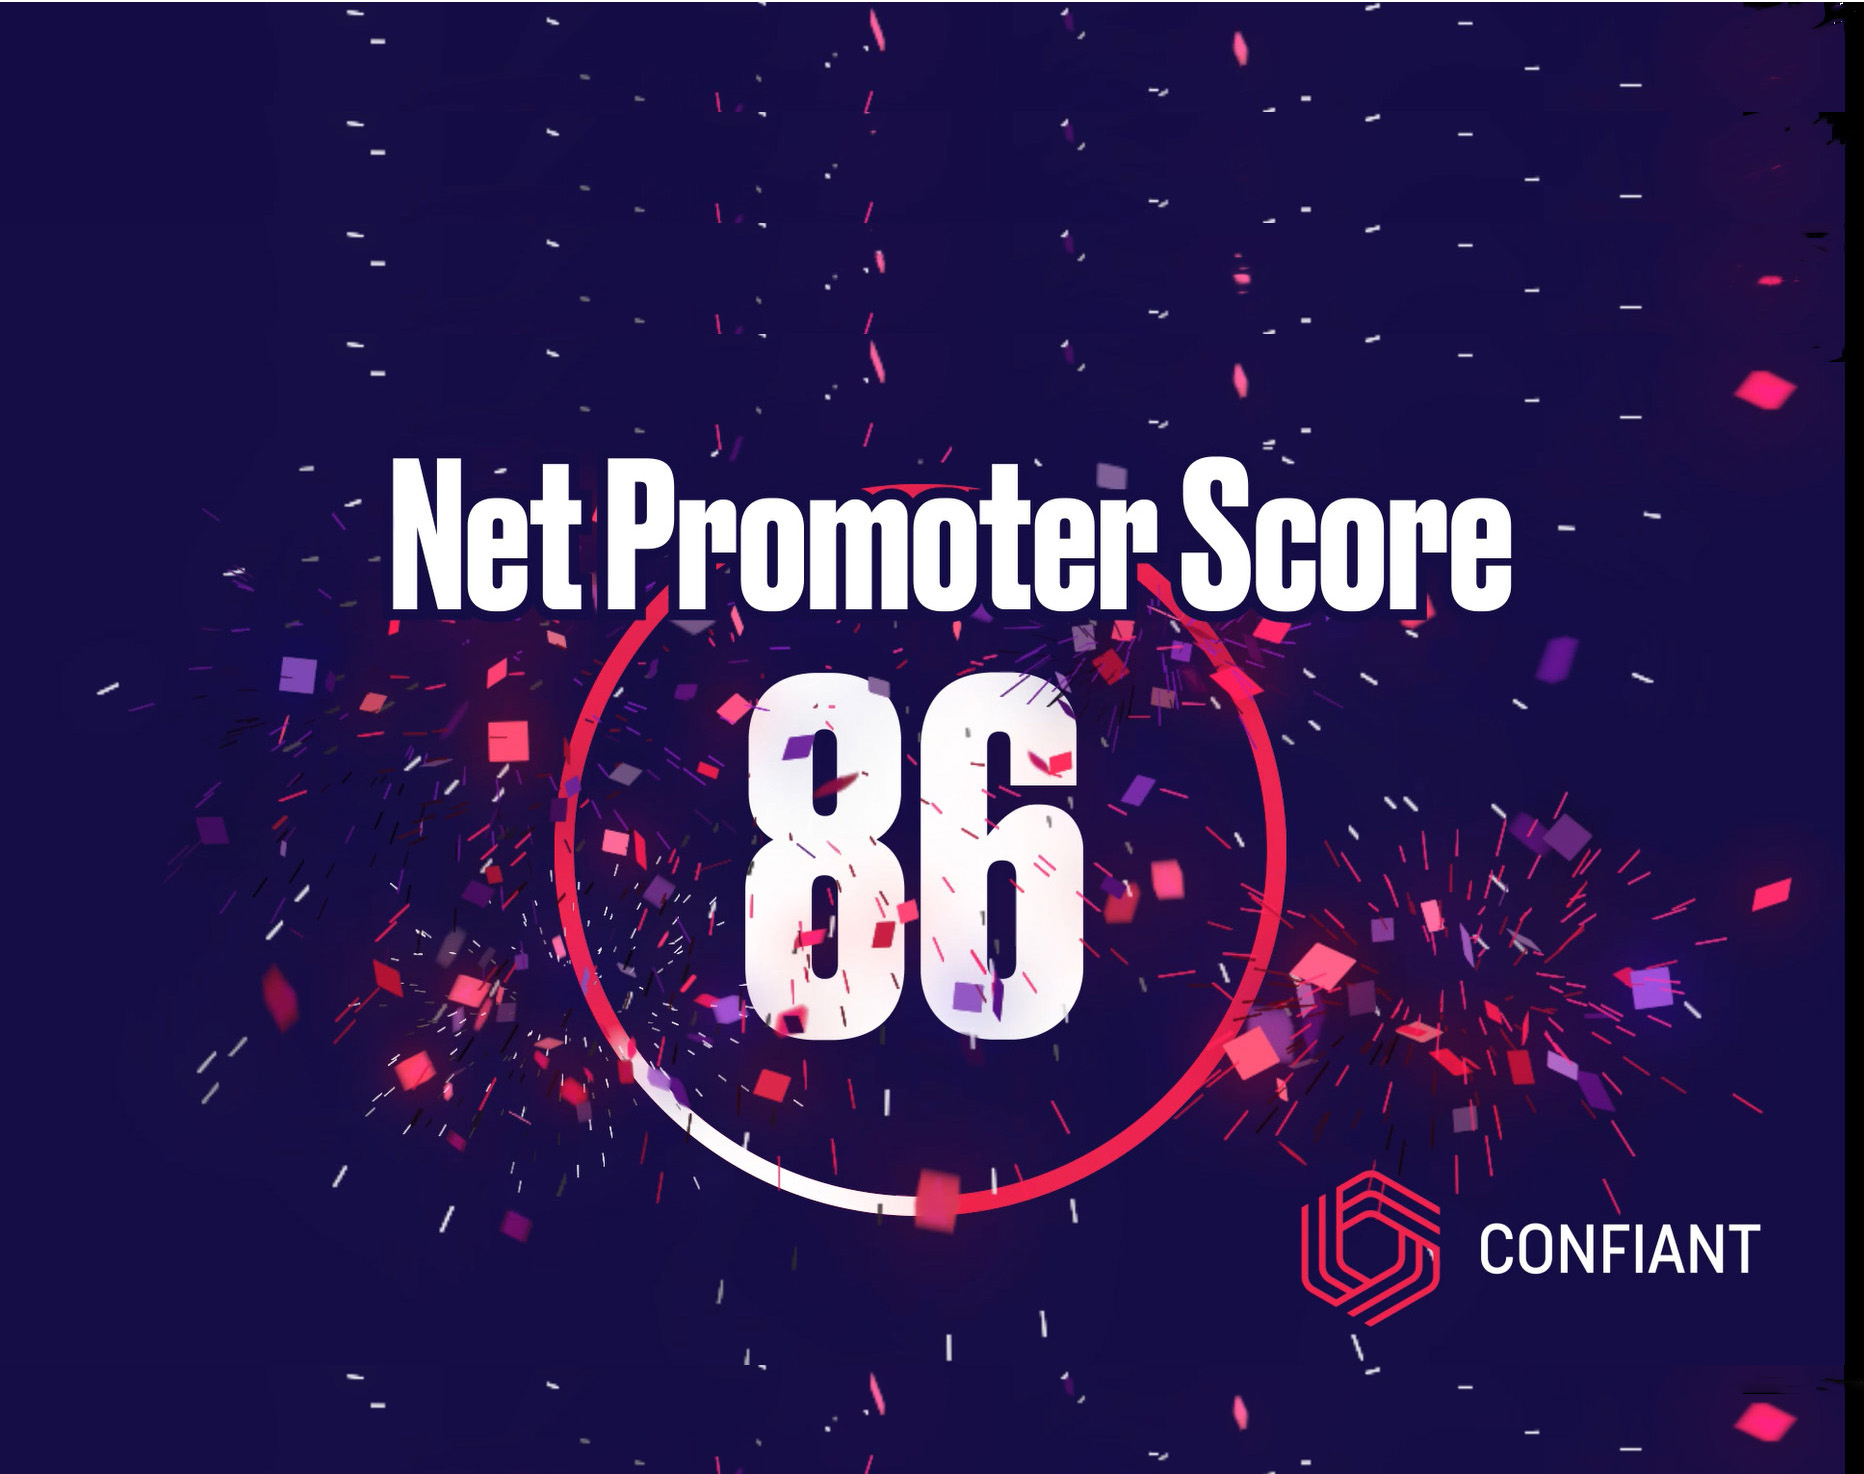 Net Promoter Score 86